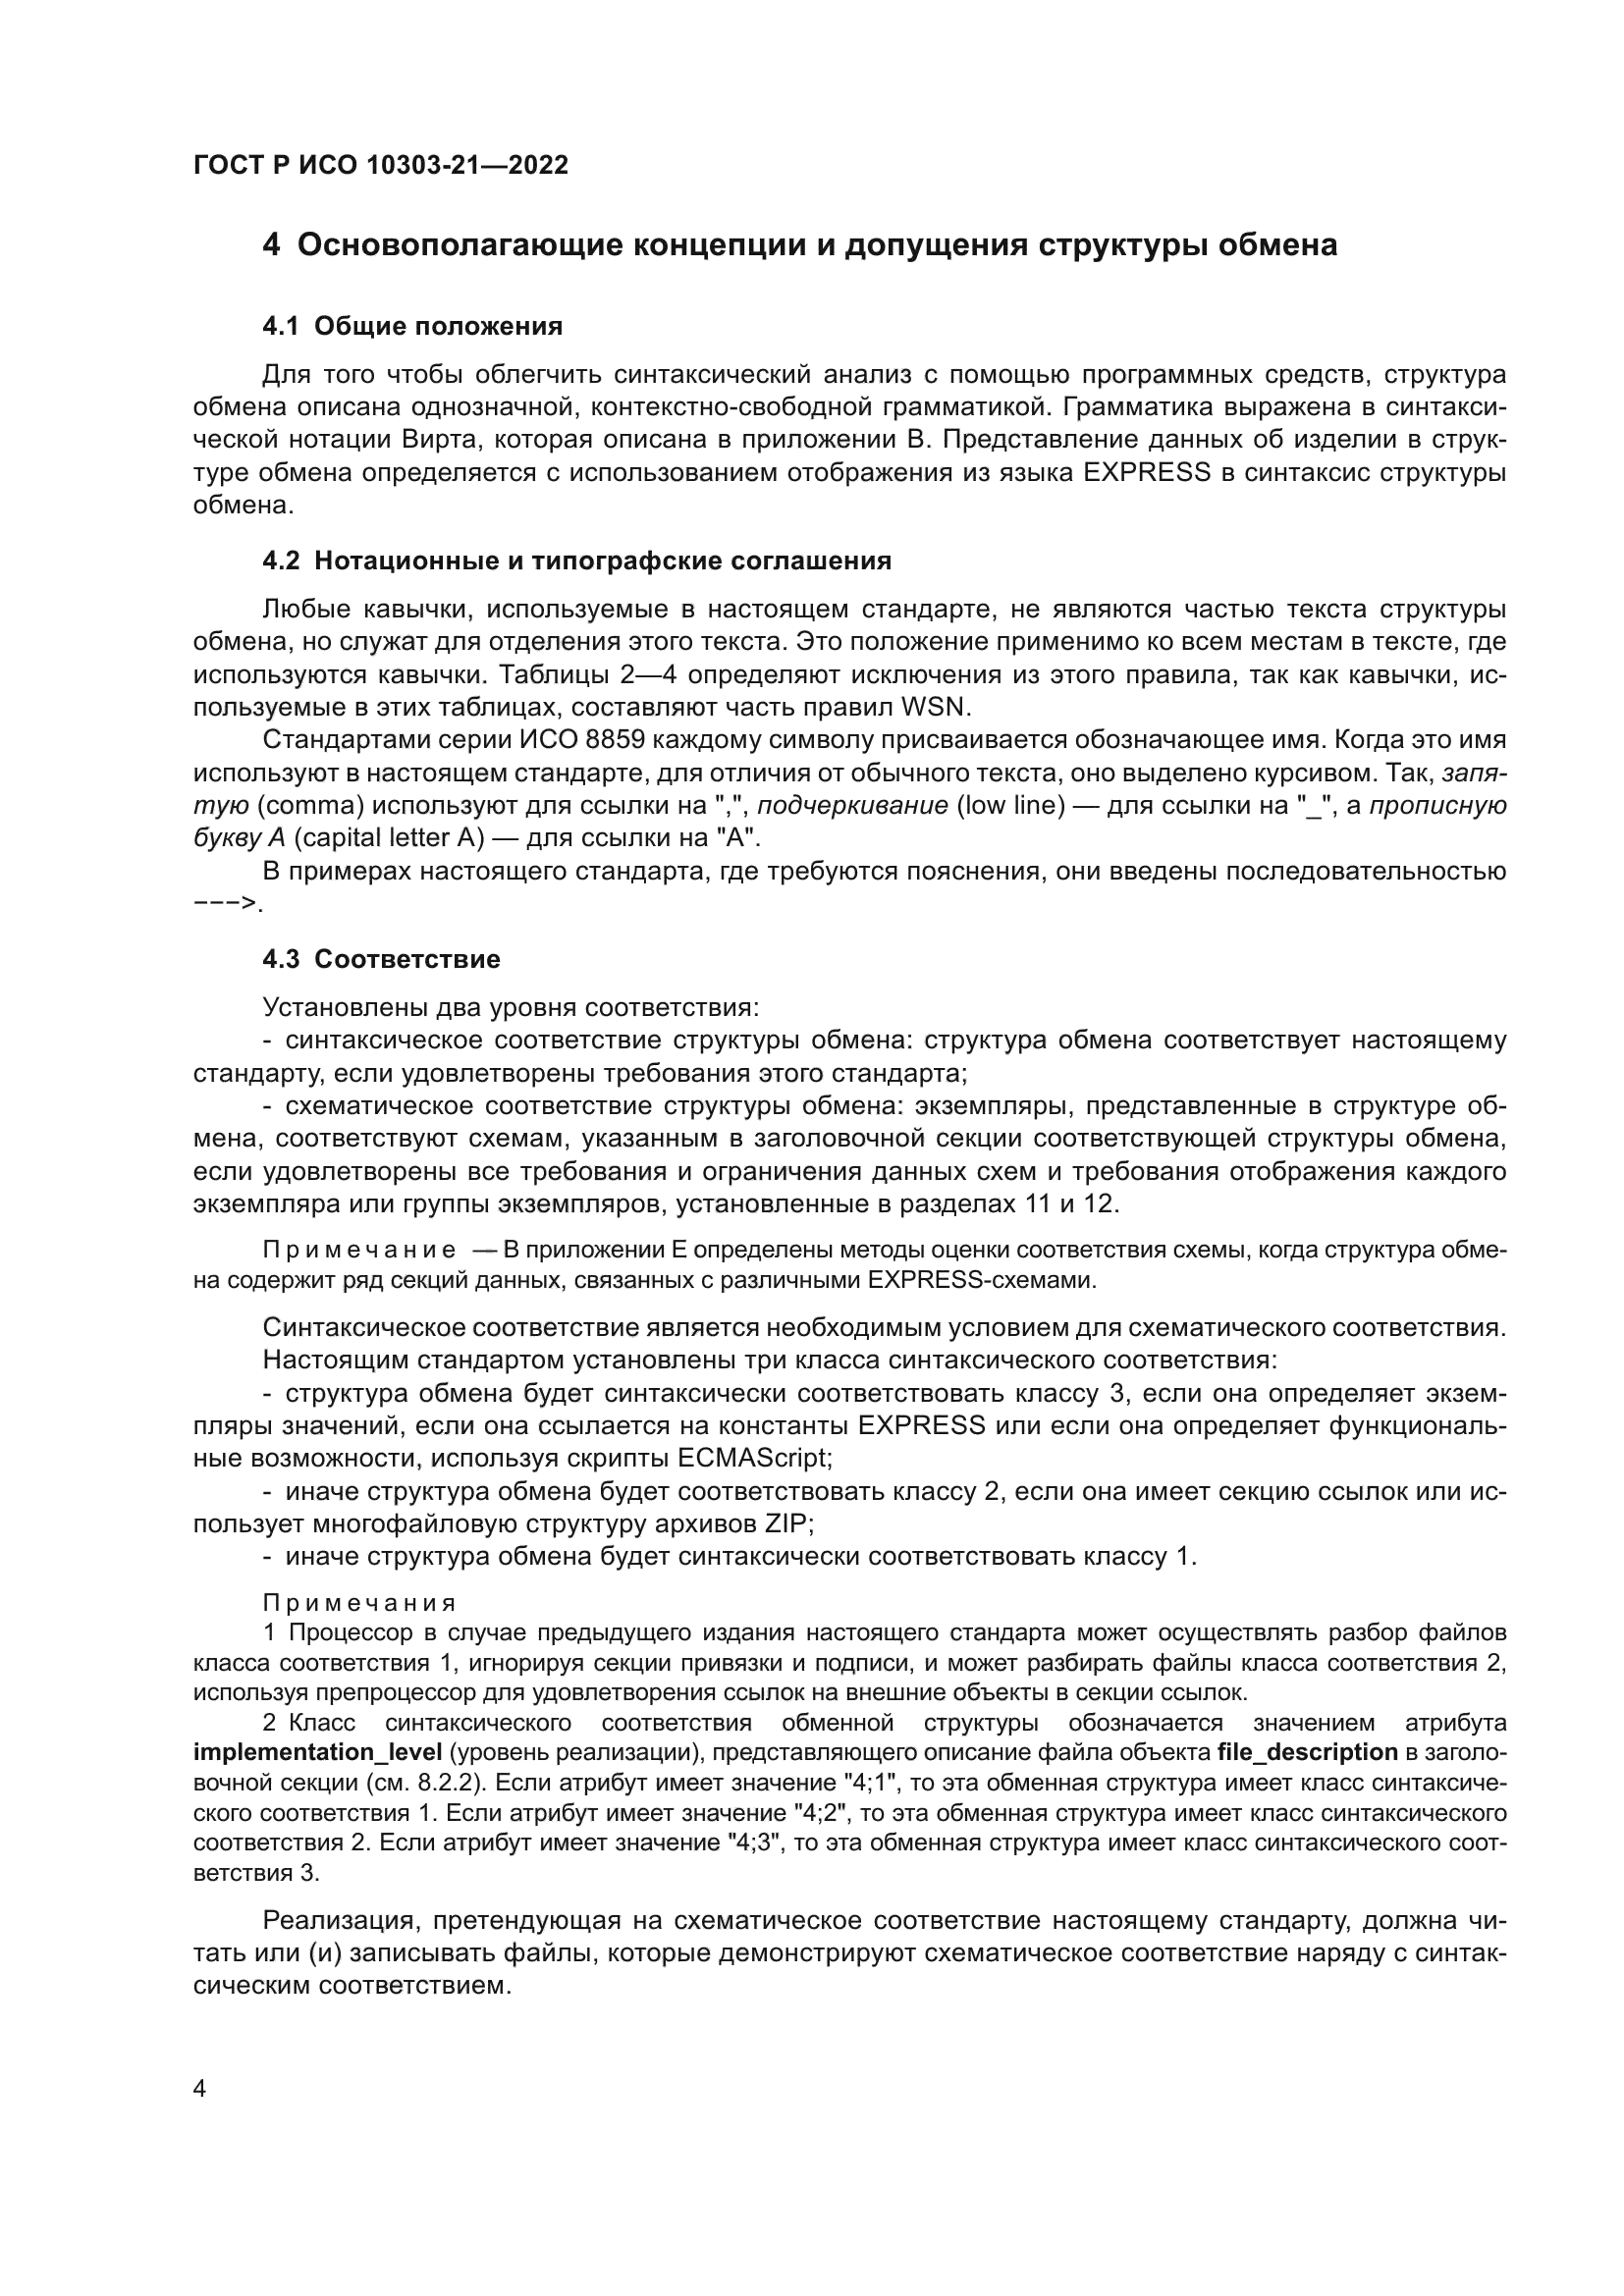 ГОСТ Р ИСО 10303-21-2022